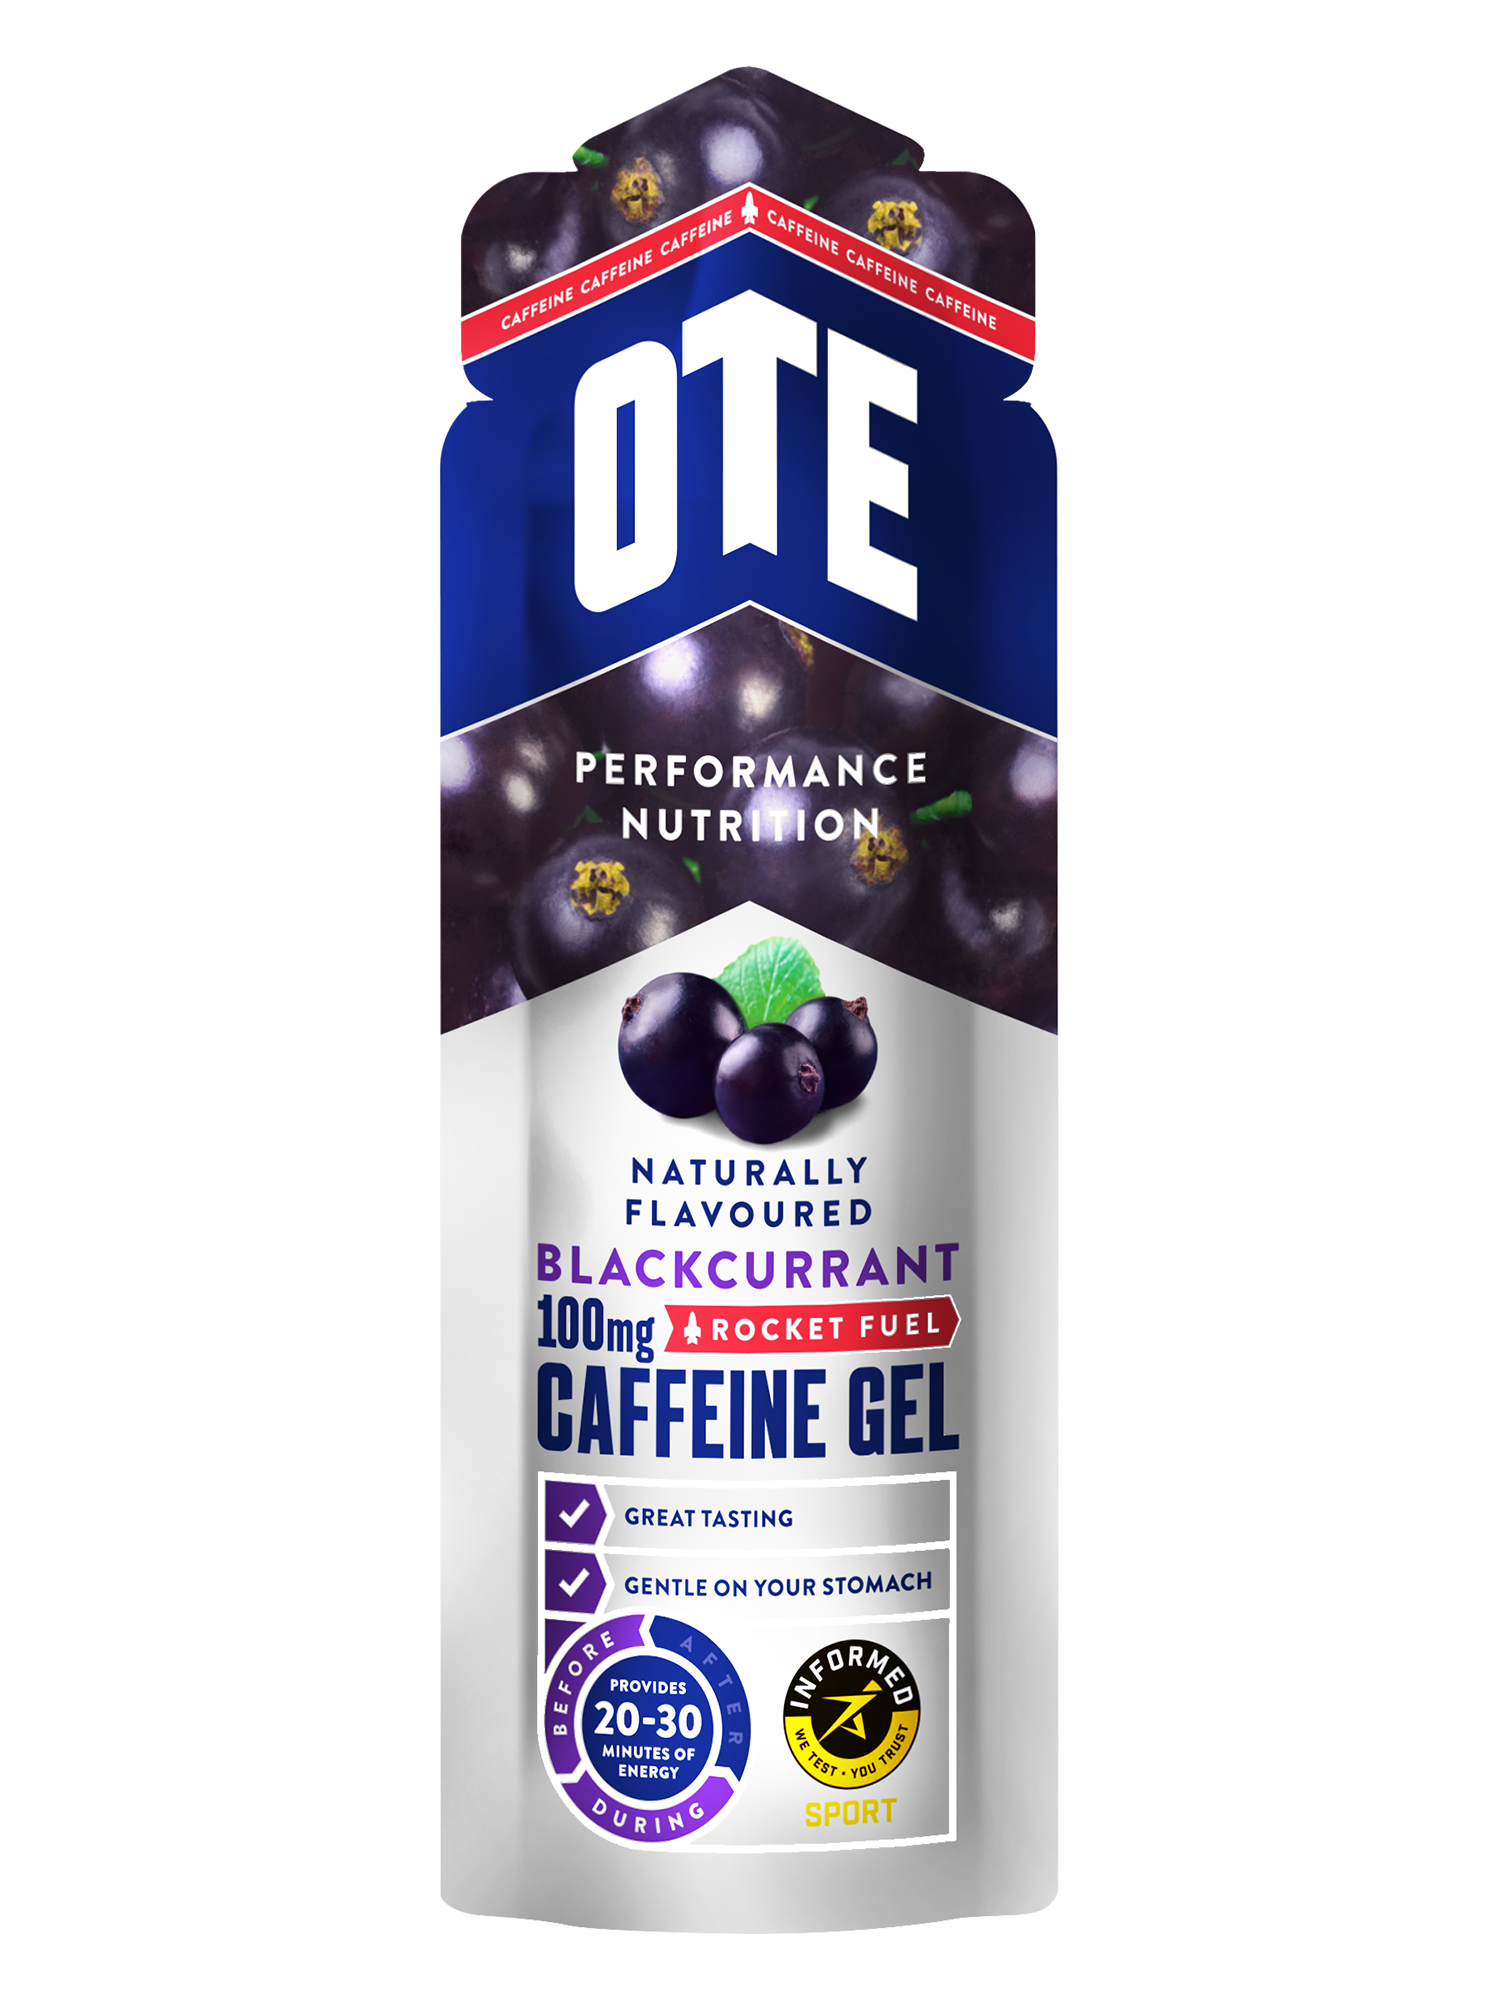 blackcurrant caffeine energy gel